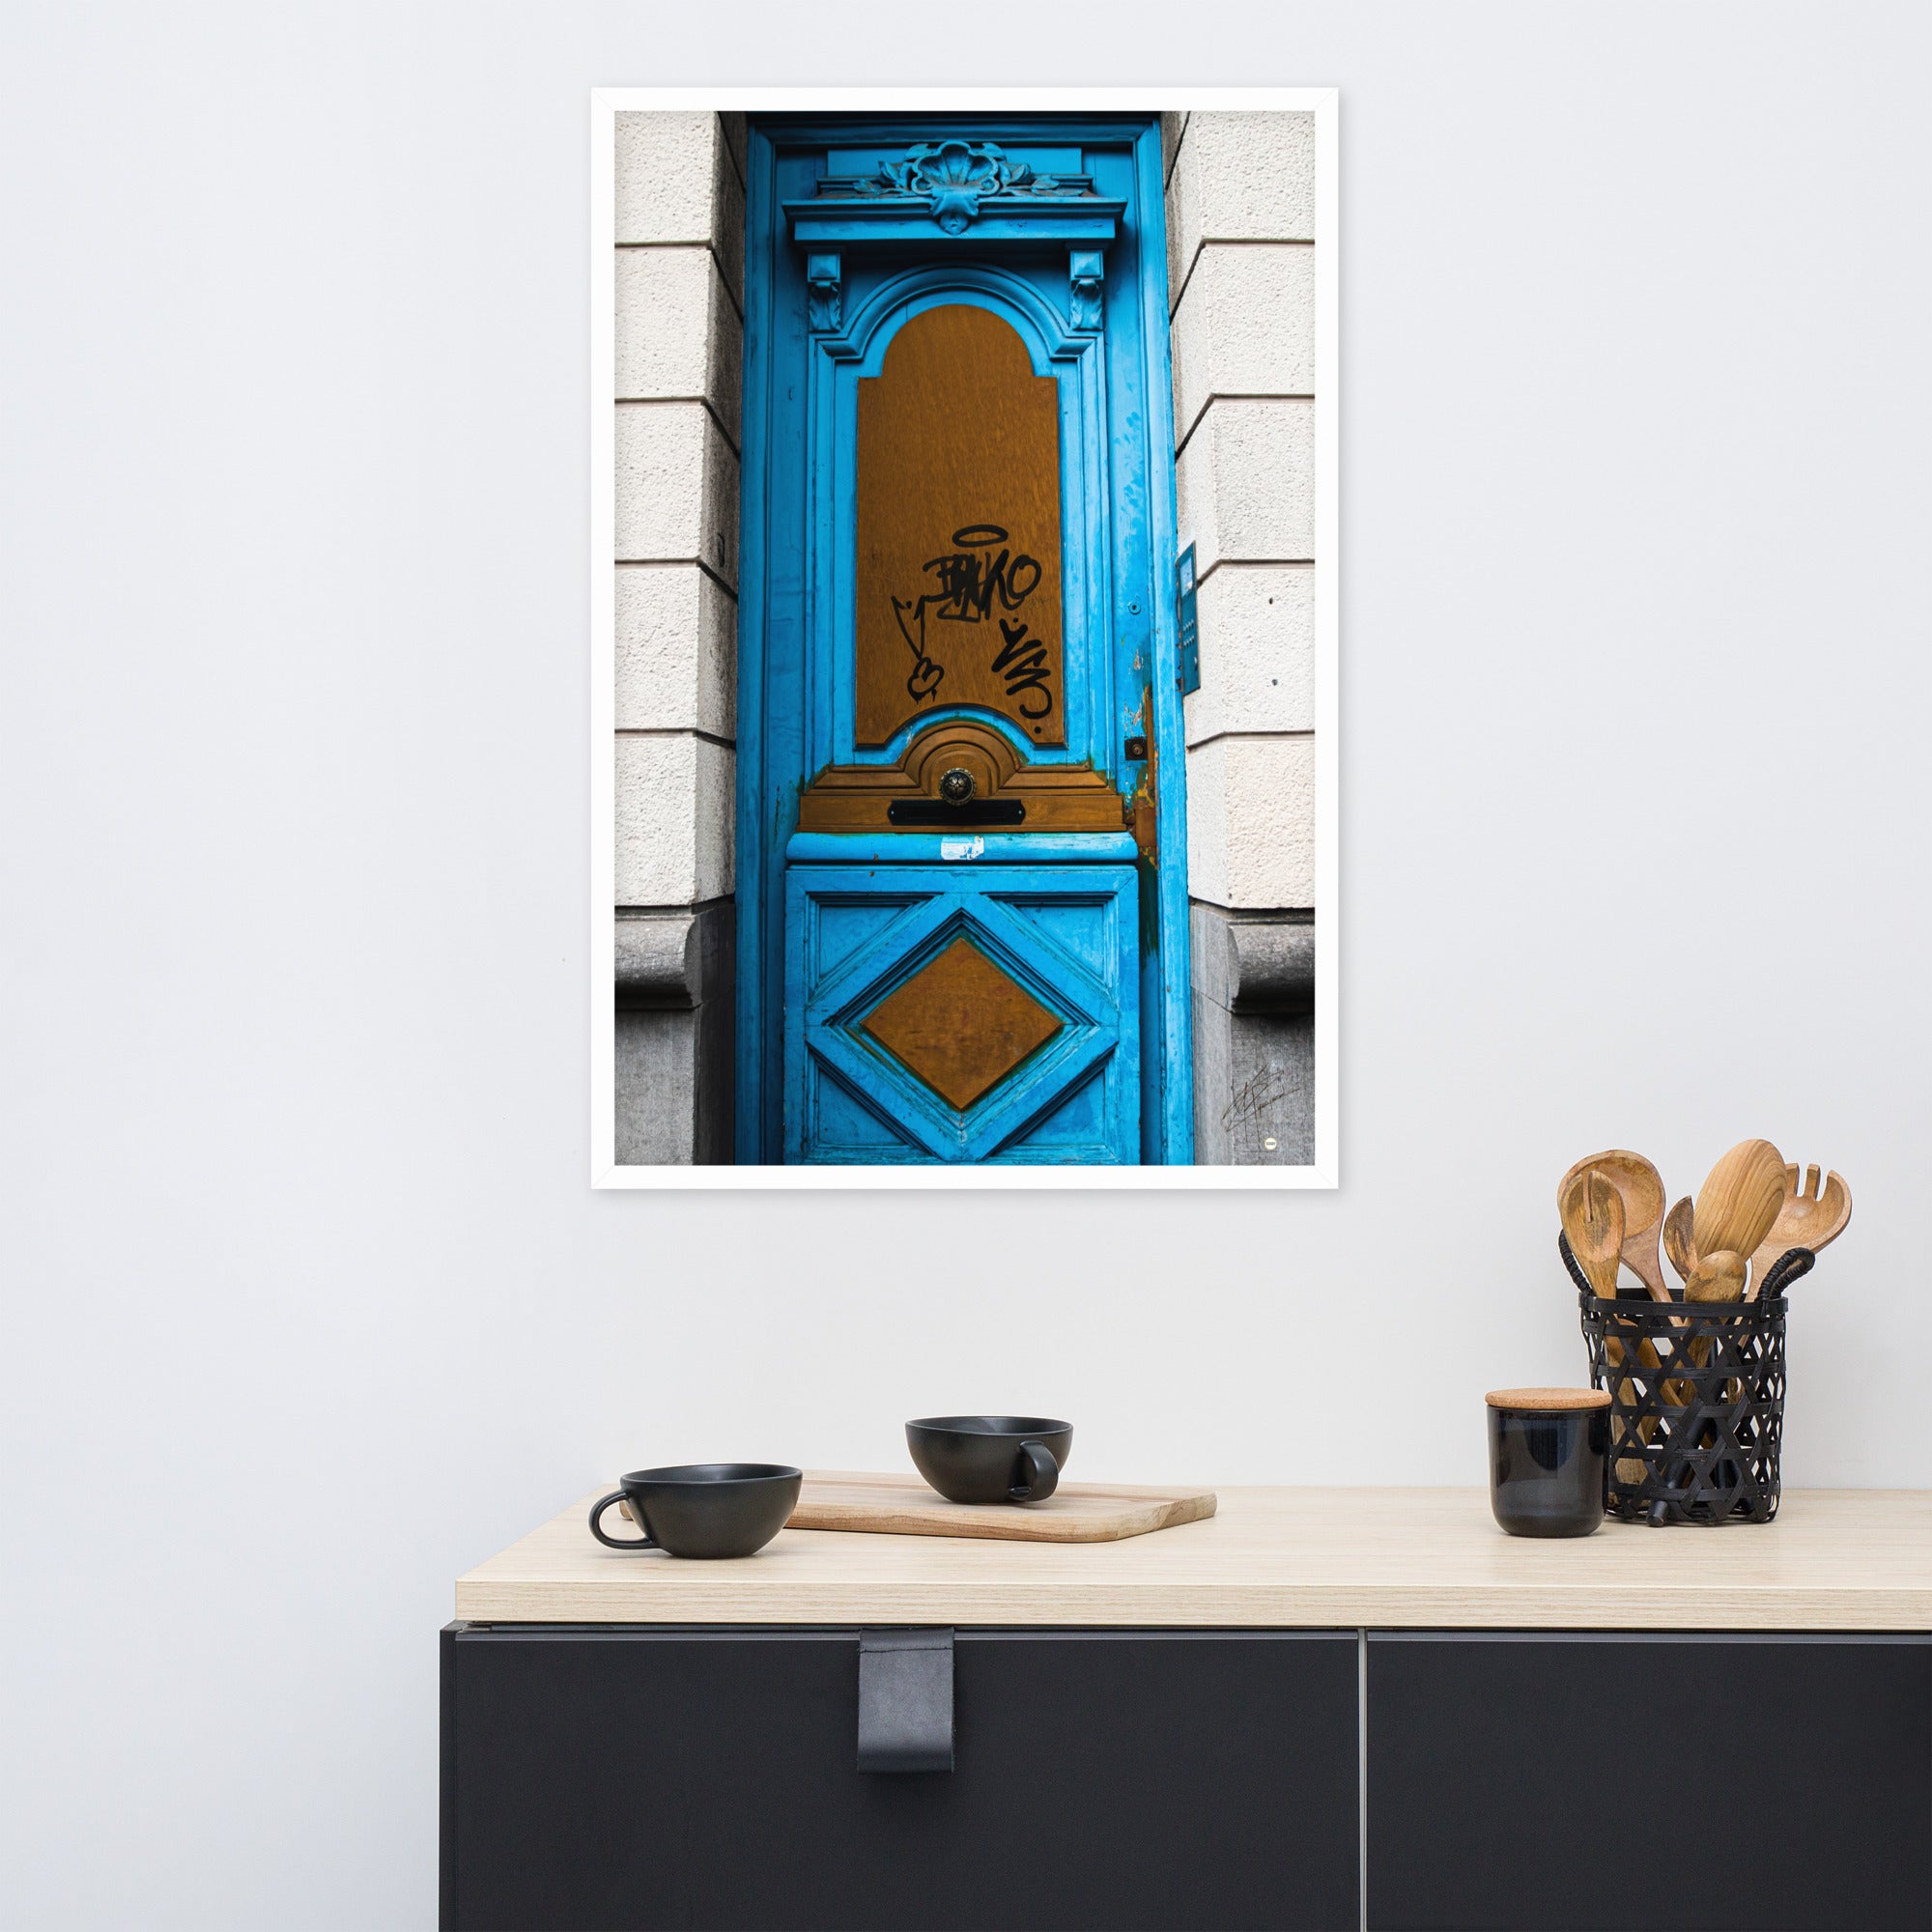 Photographie d'une élégante porte bleue, imprimée avec une précision muséale, capturant le mystère et l'intrigue de ce qui pourrait se trouver derrière elle.